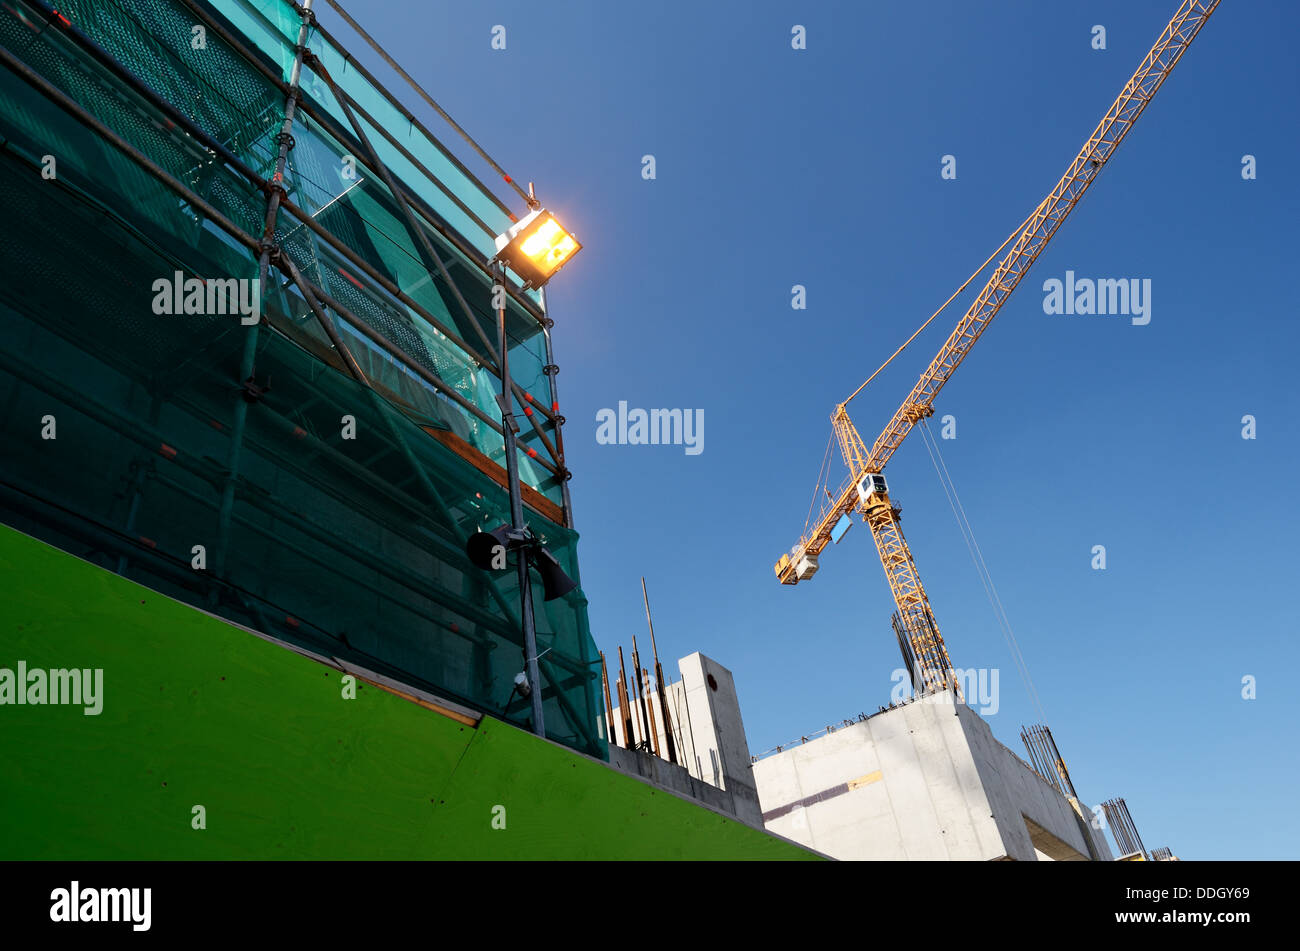 Paysage industriel, de la construction, crane contre le ciel bleu Banque D'Images